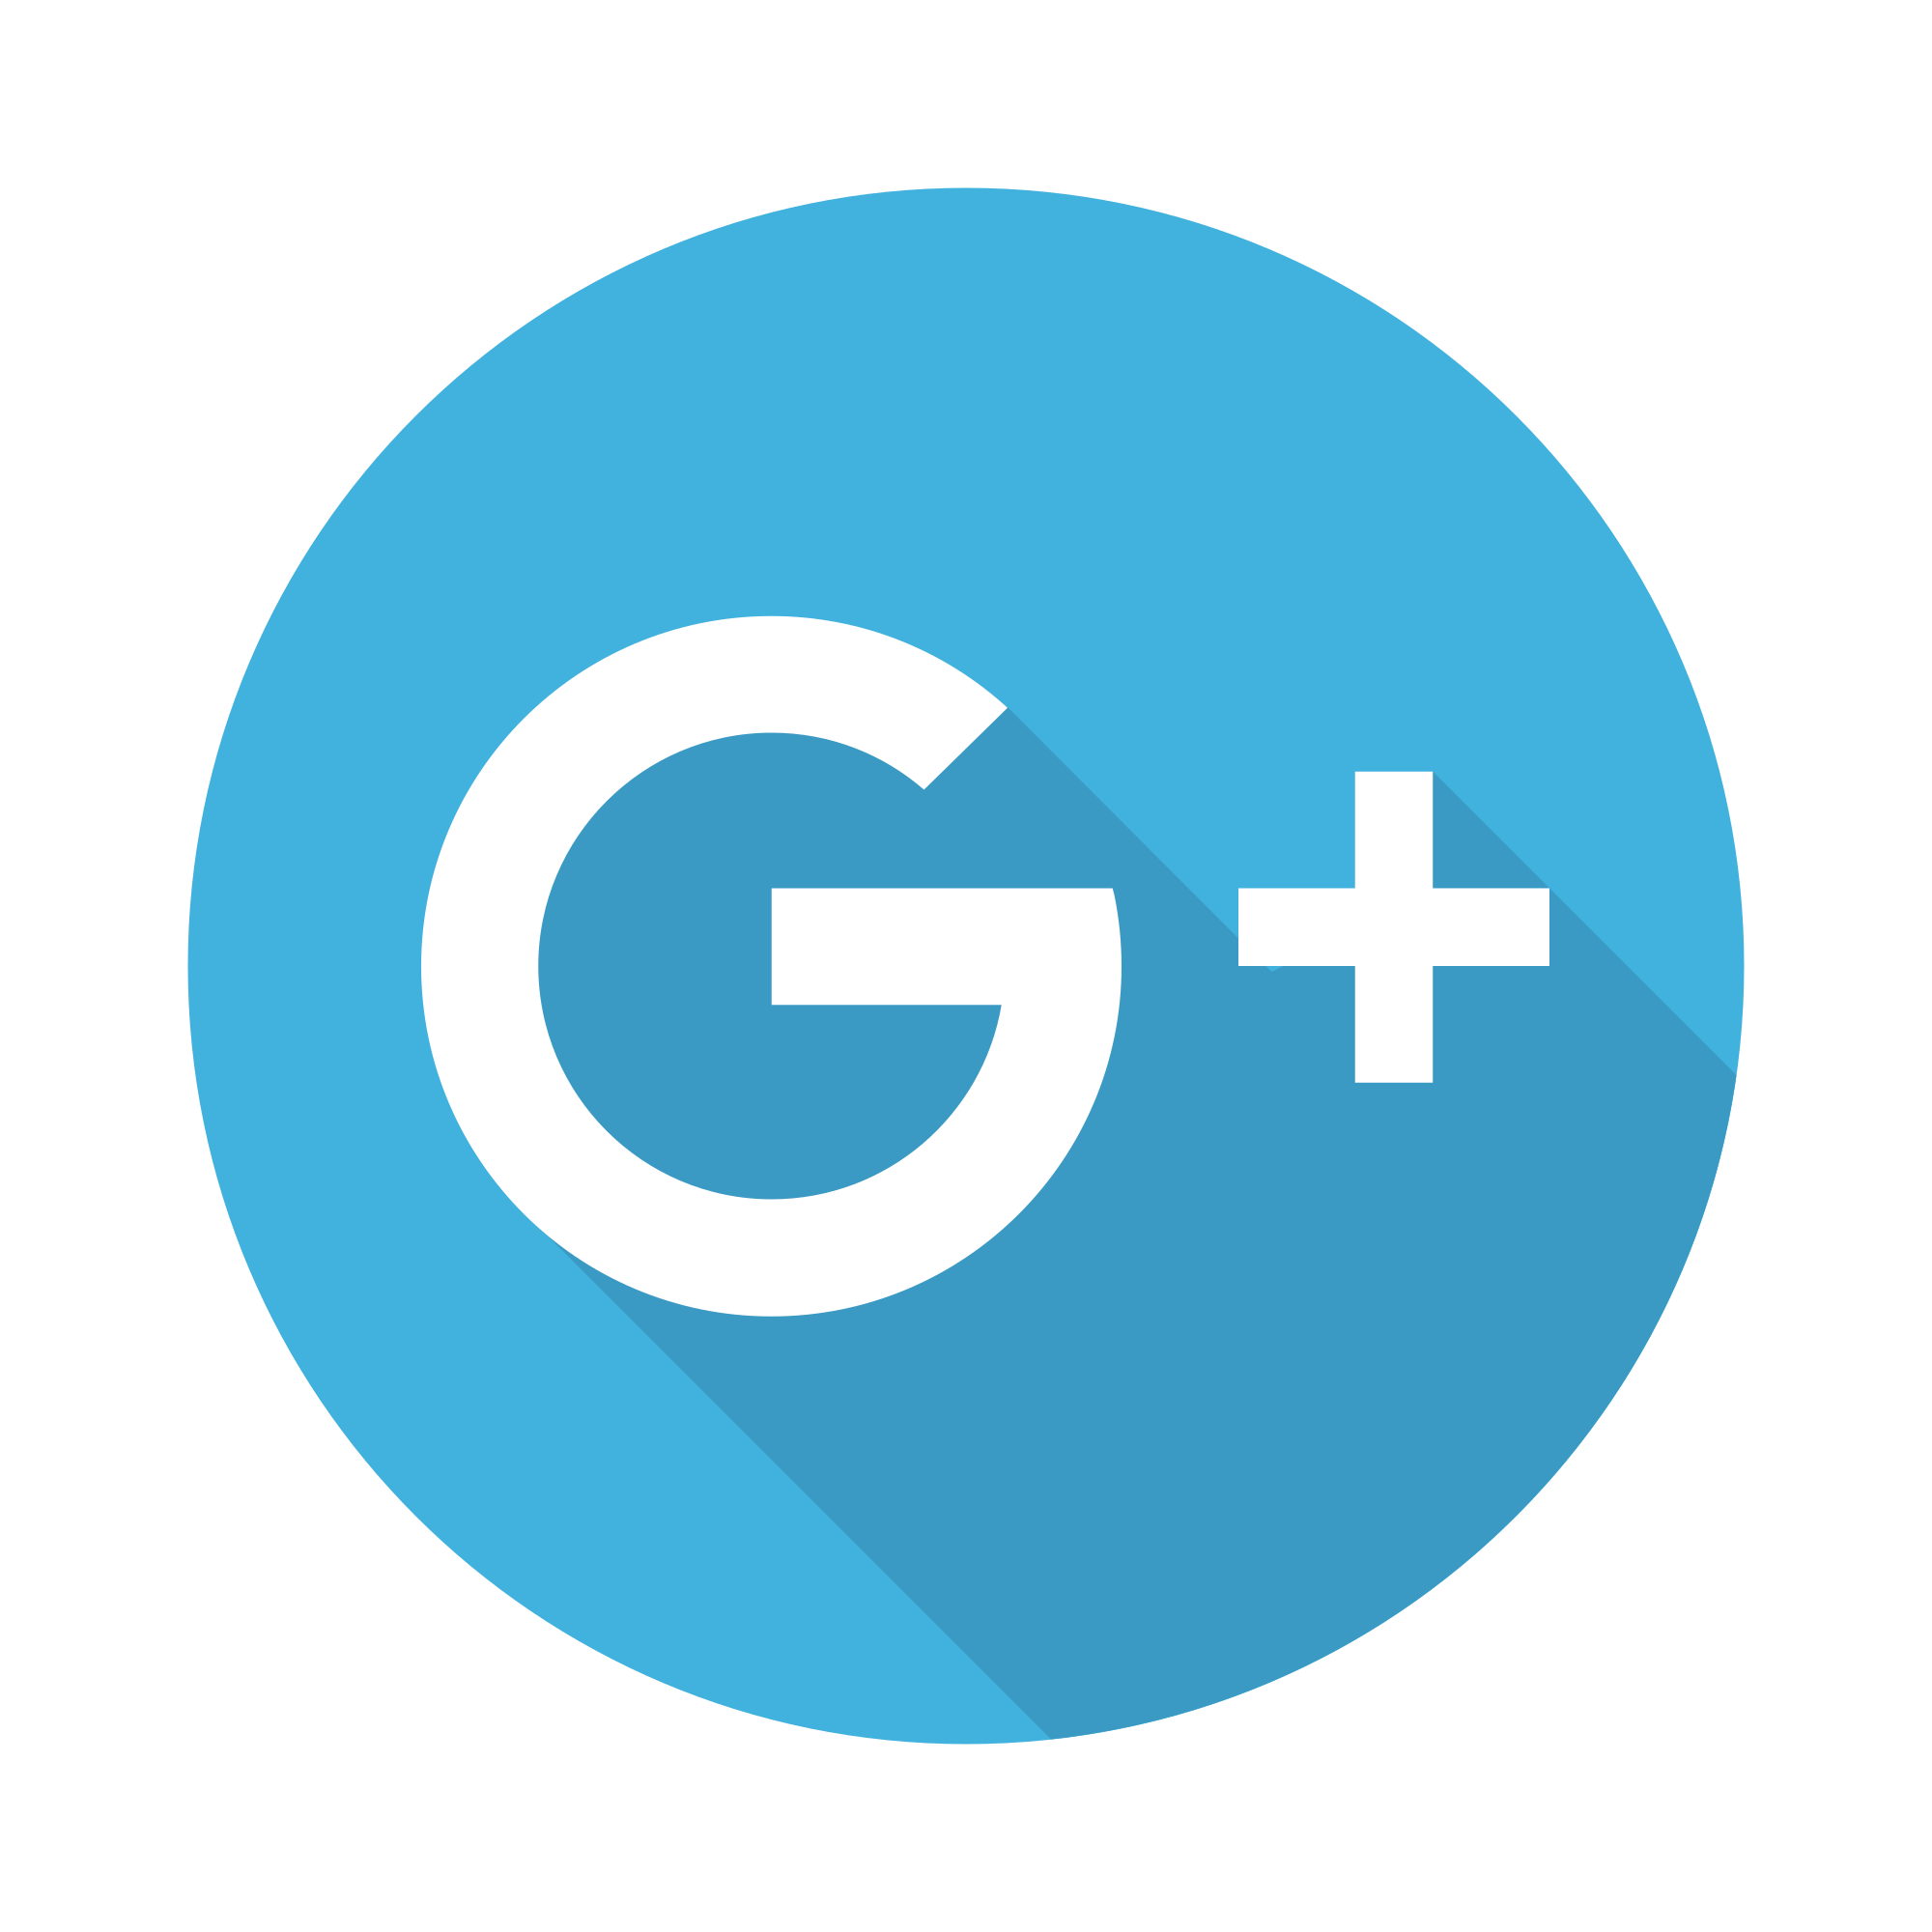 Google Plus Logo Vector SVG Icon - SVGRepo Free SVG Vectors